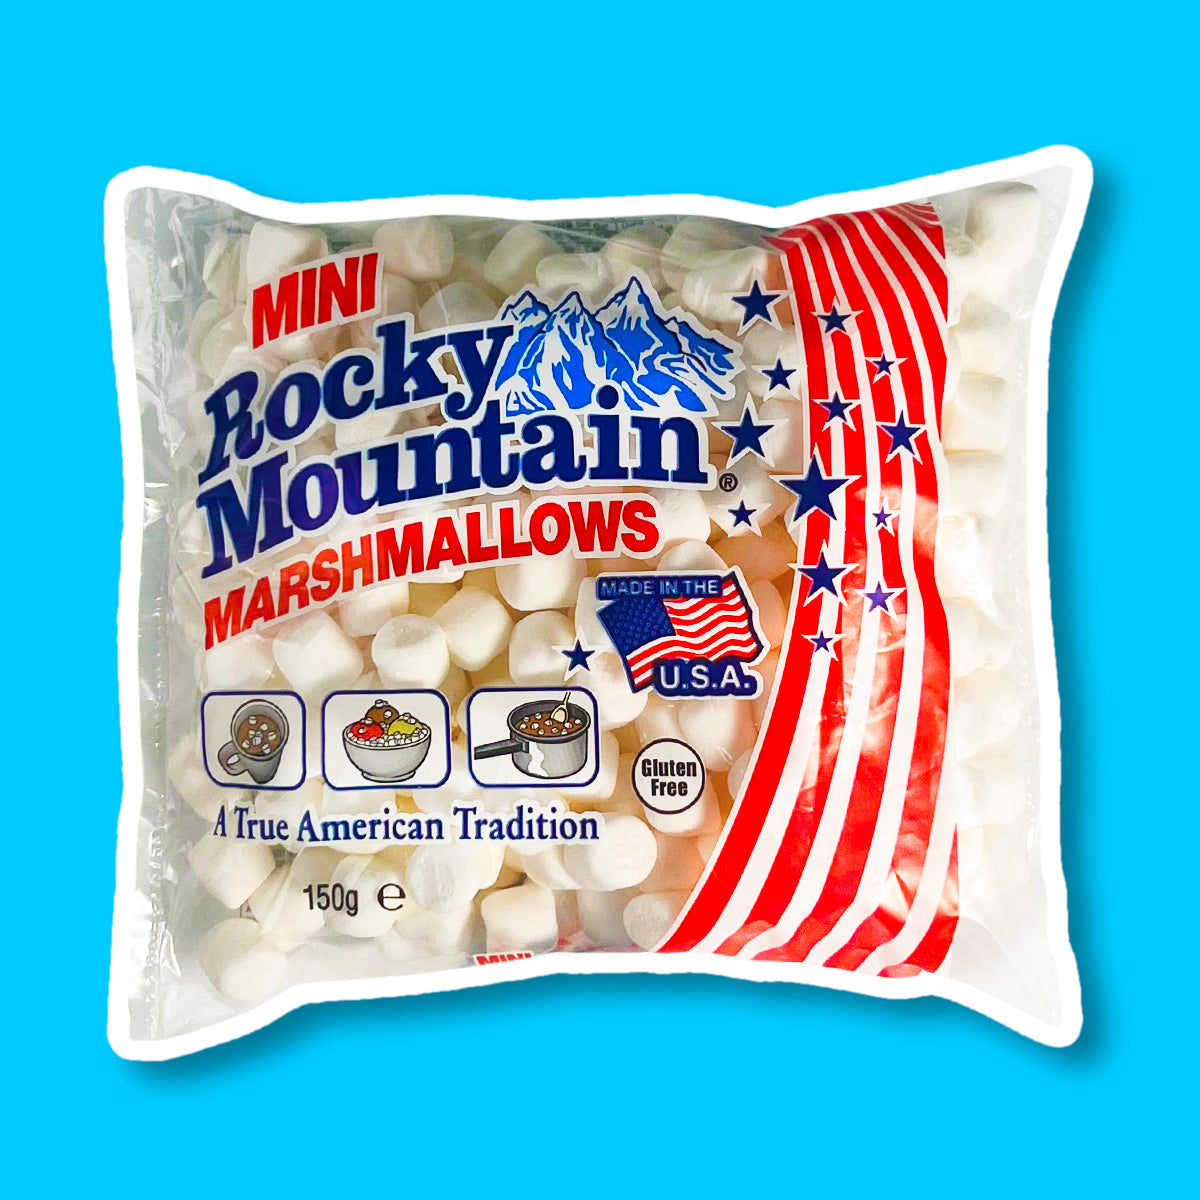 Un grand paquet transparent de mini marshmallows blancs avec sur le côté droit des lignes rouges et des étoiles bleues le tout sur fond bleu